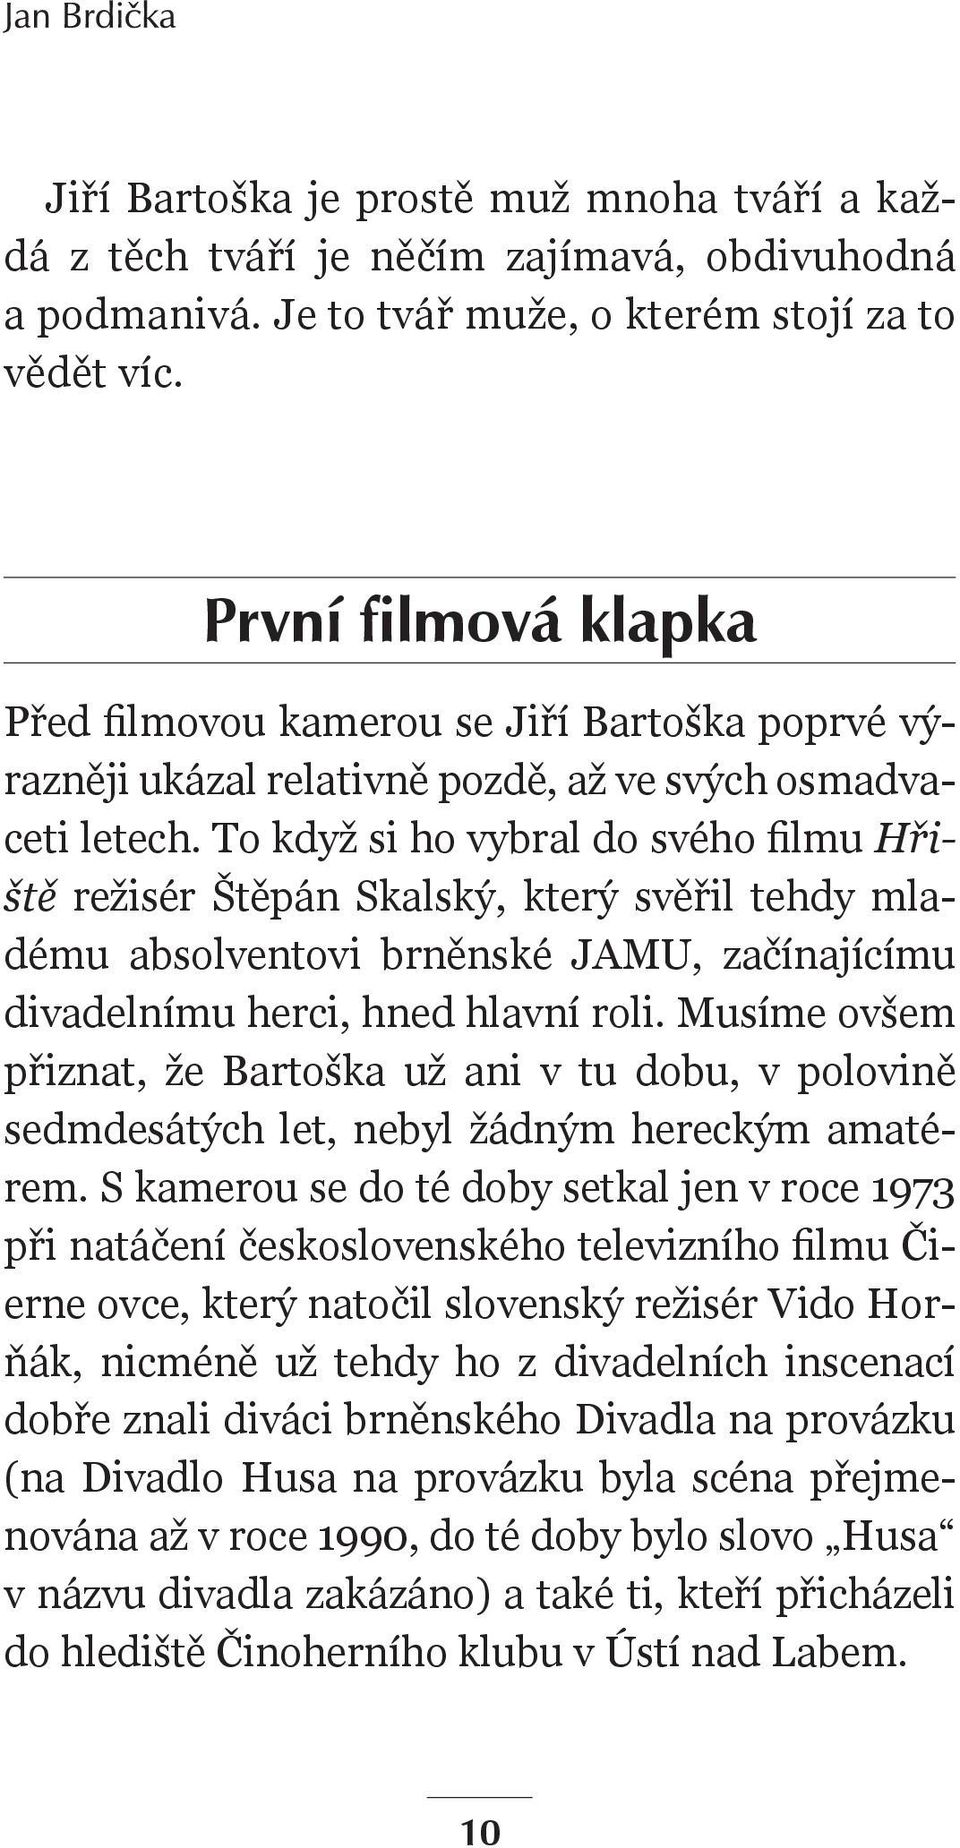 To když si ho vybral do svého filmu Hřiště režisér Štěpán Skalský, který svěřil tehdy mladému absolventovi brněnské JAMU, začínajícímu divadelnímu herci, hned hlavní roli.